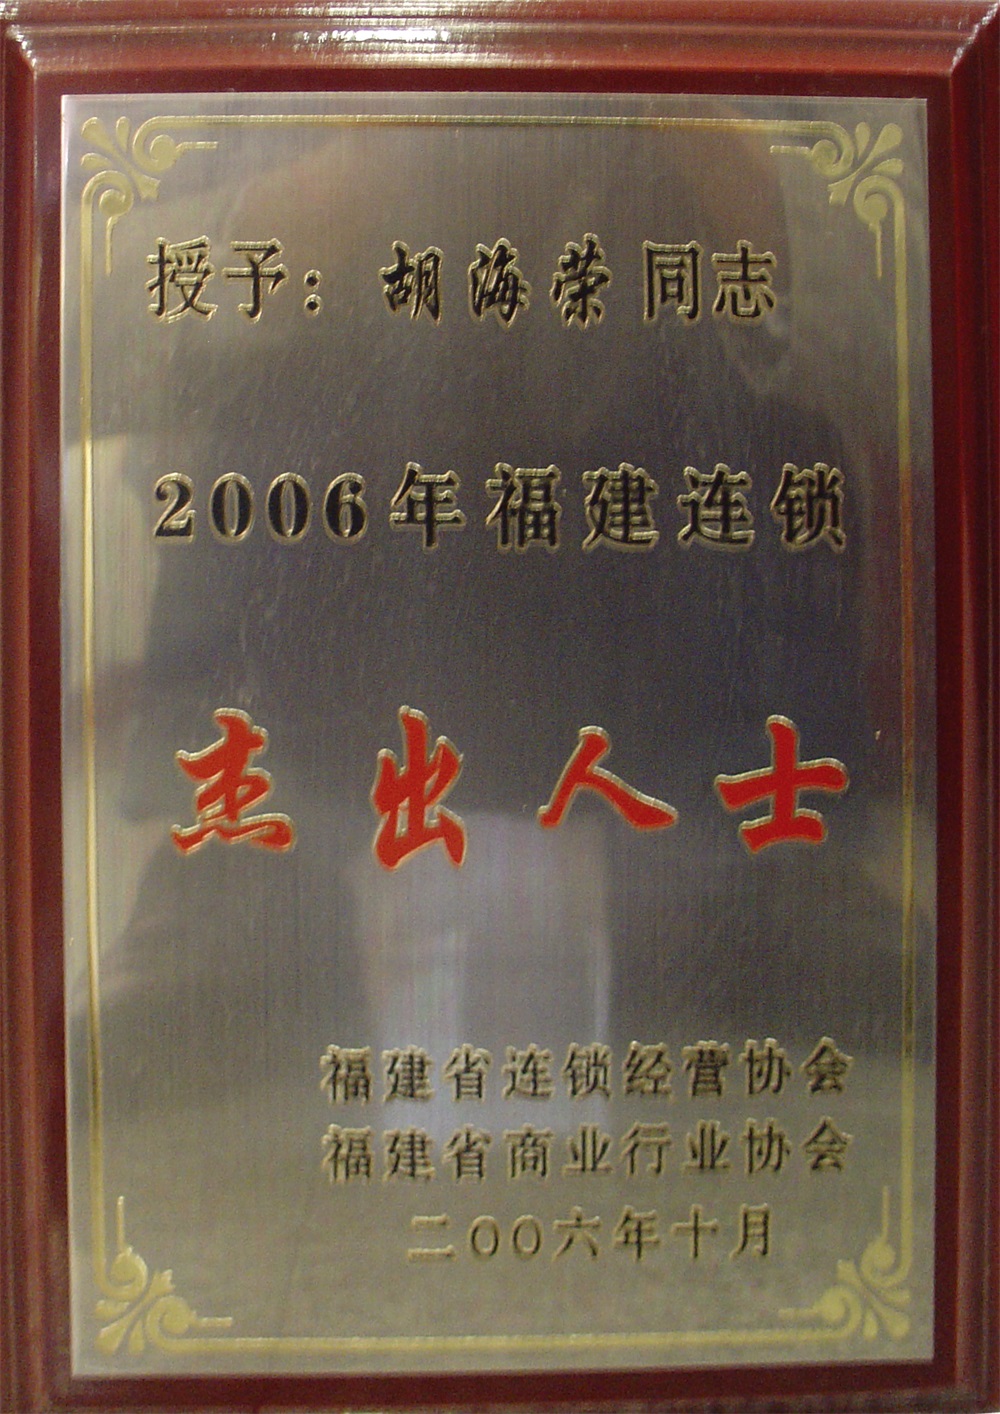 胡海荣“2006年福建连锁杰出人士”